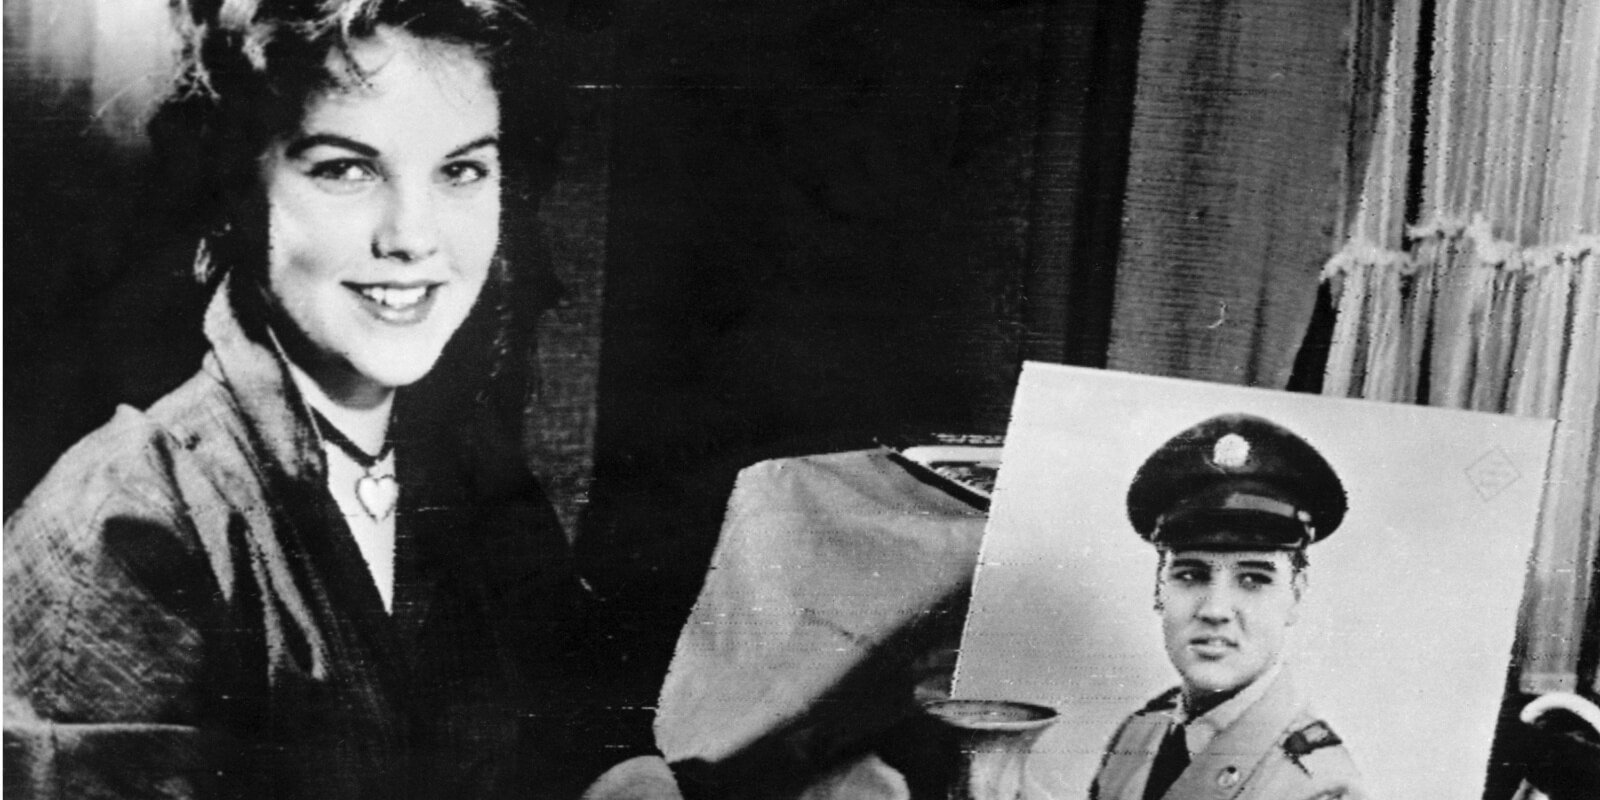 Priscilla Presley and a photo of Elvis Presley taken in 1960.